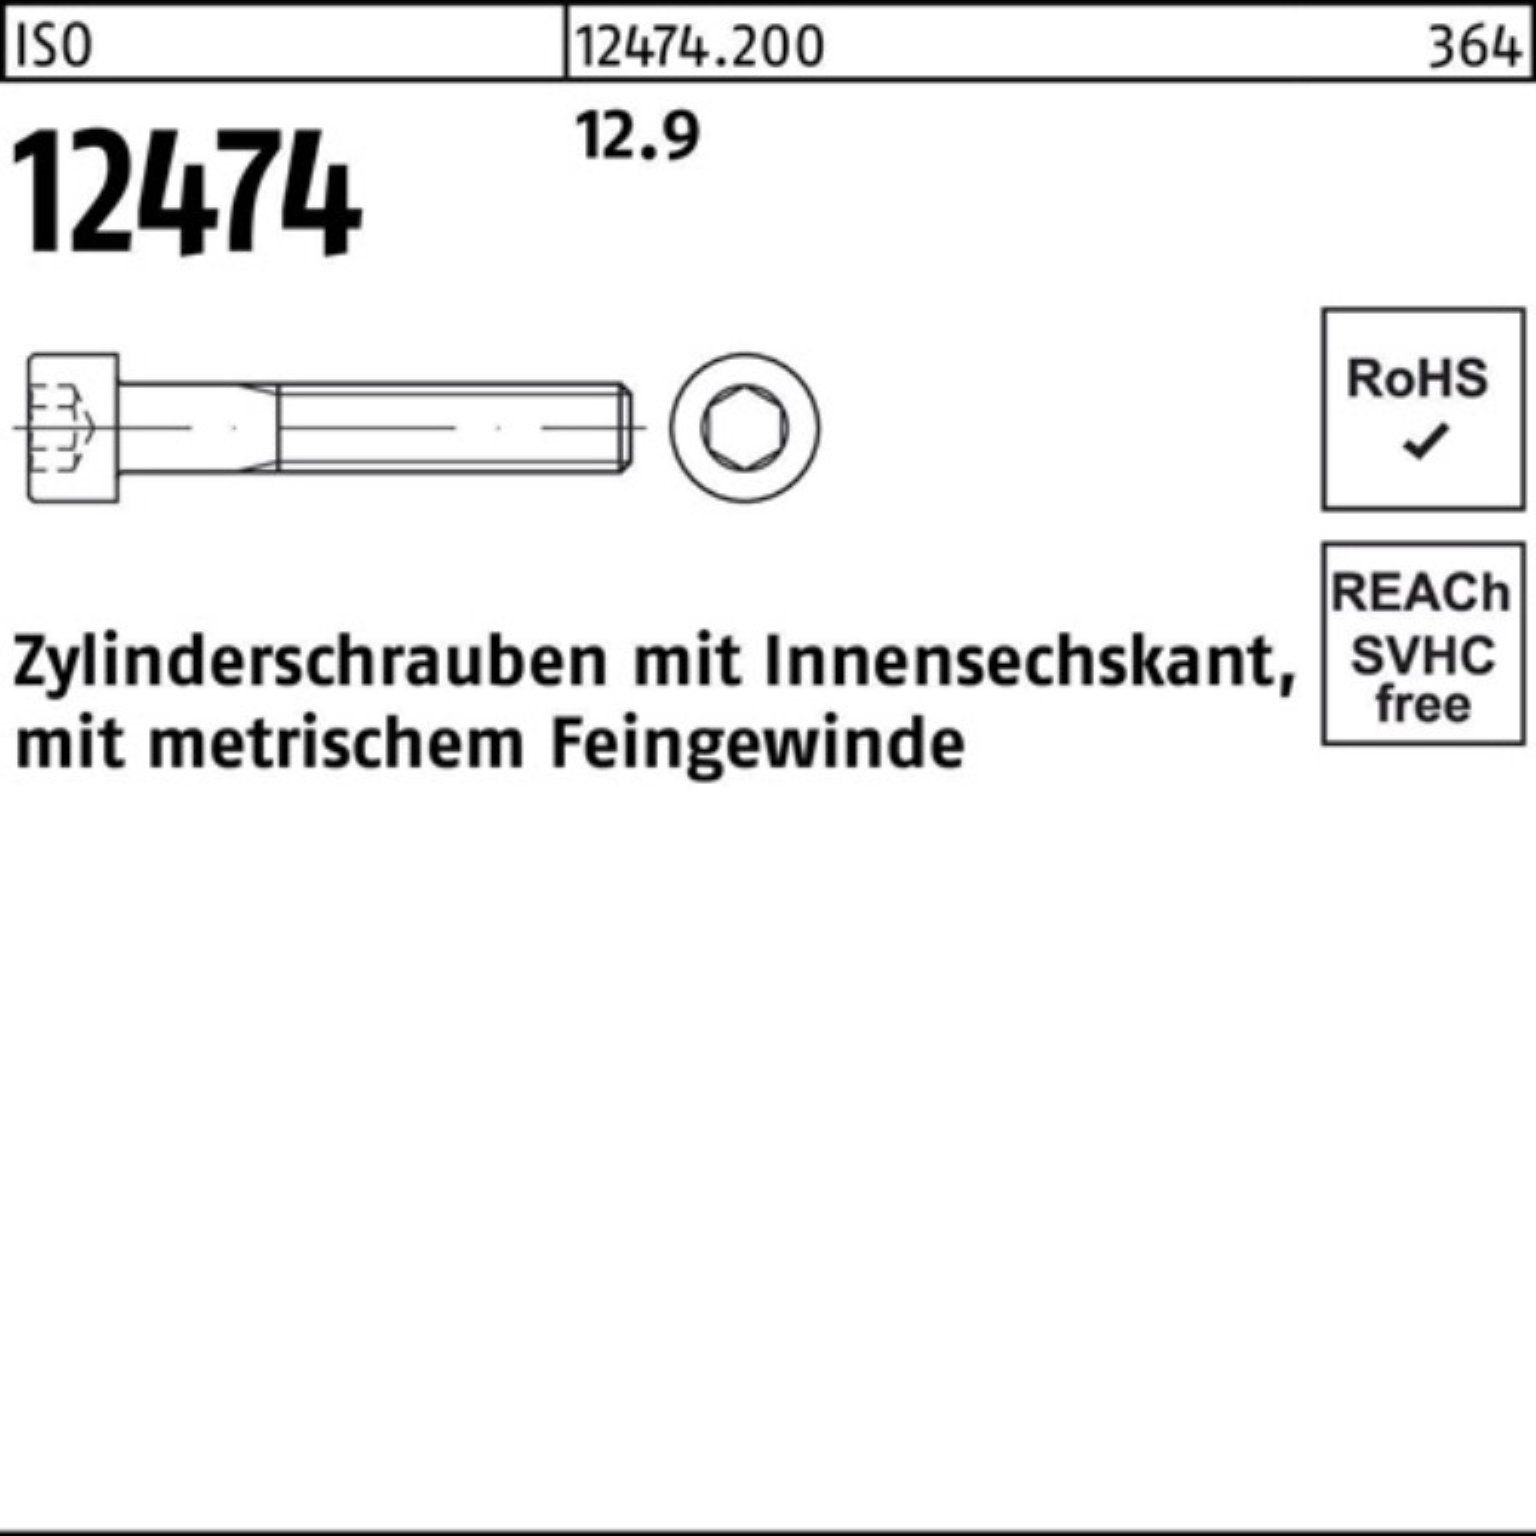 Pack Zylinderschraube Reyher Stü 12.9 25 80 100er 12474 ISO Innen-6kt Zylinderschraube M24x2x